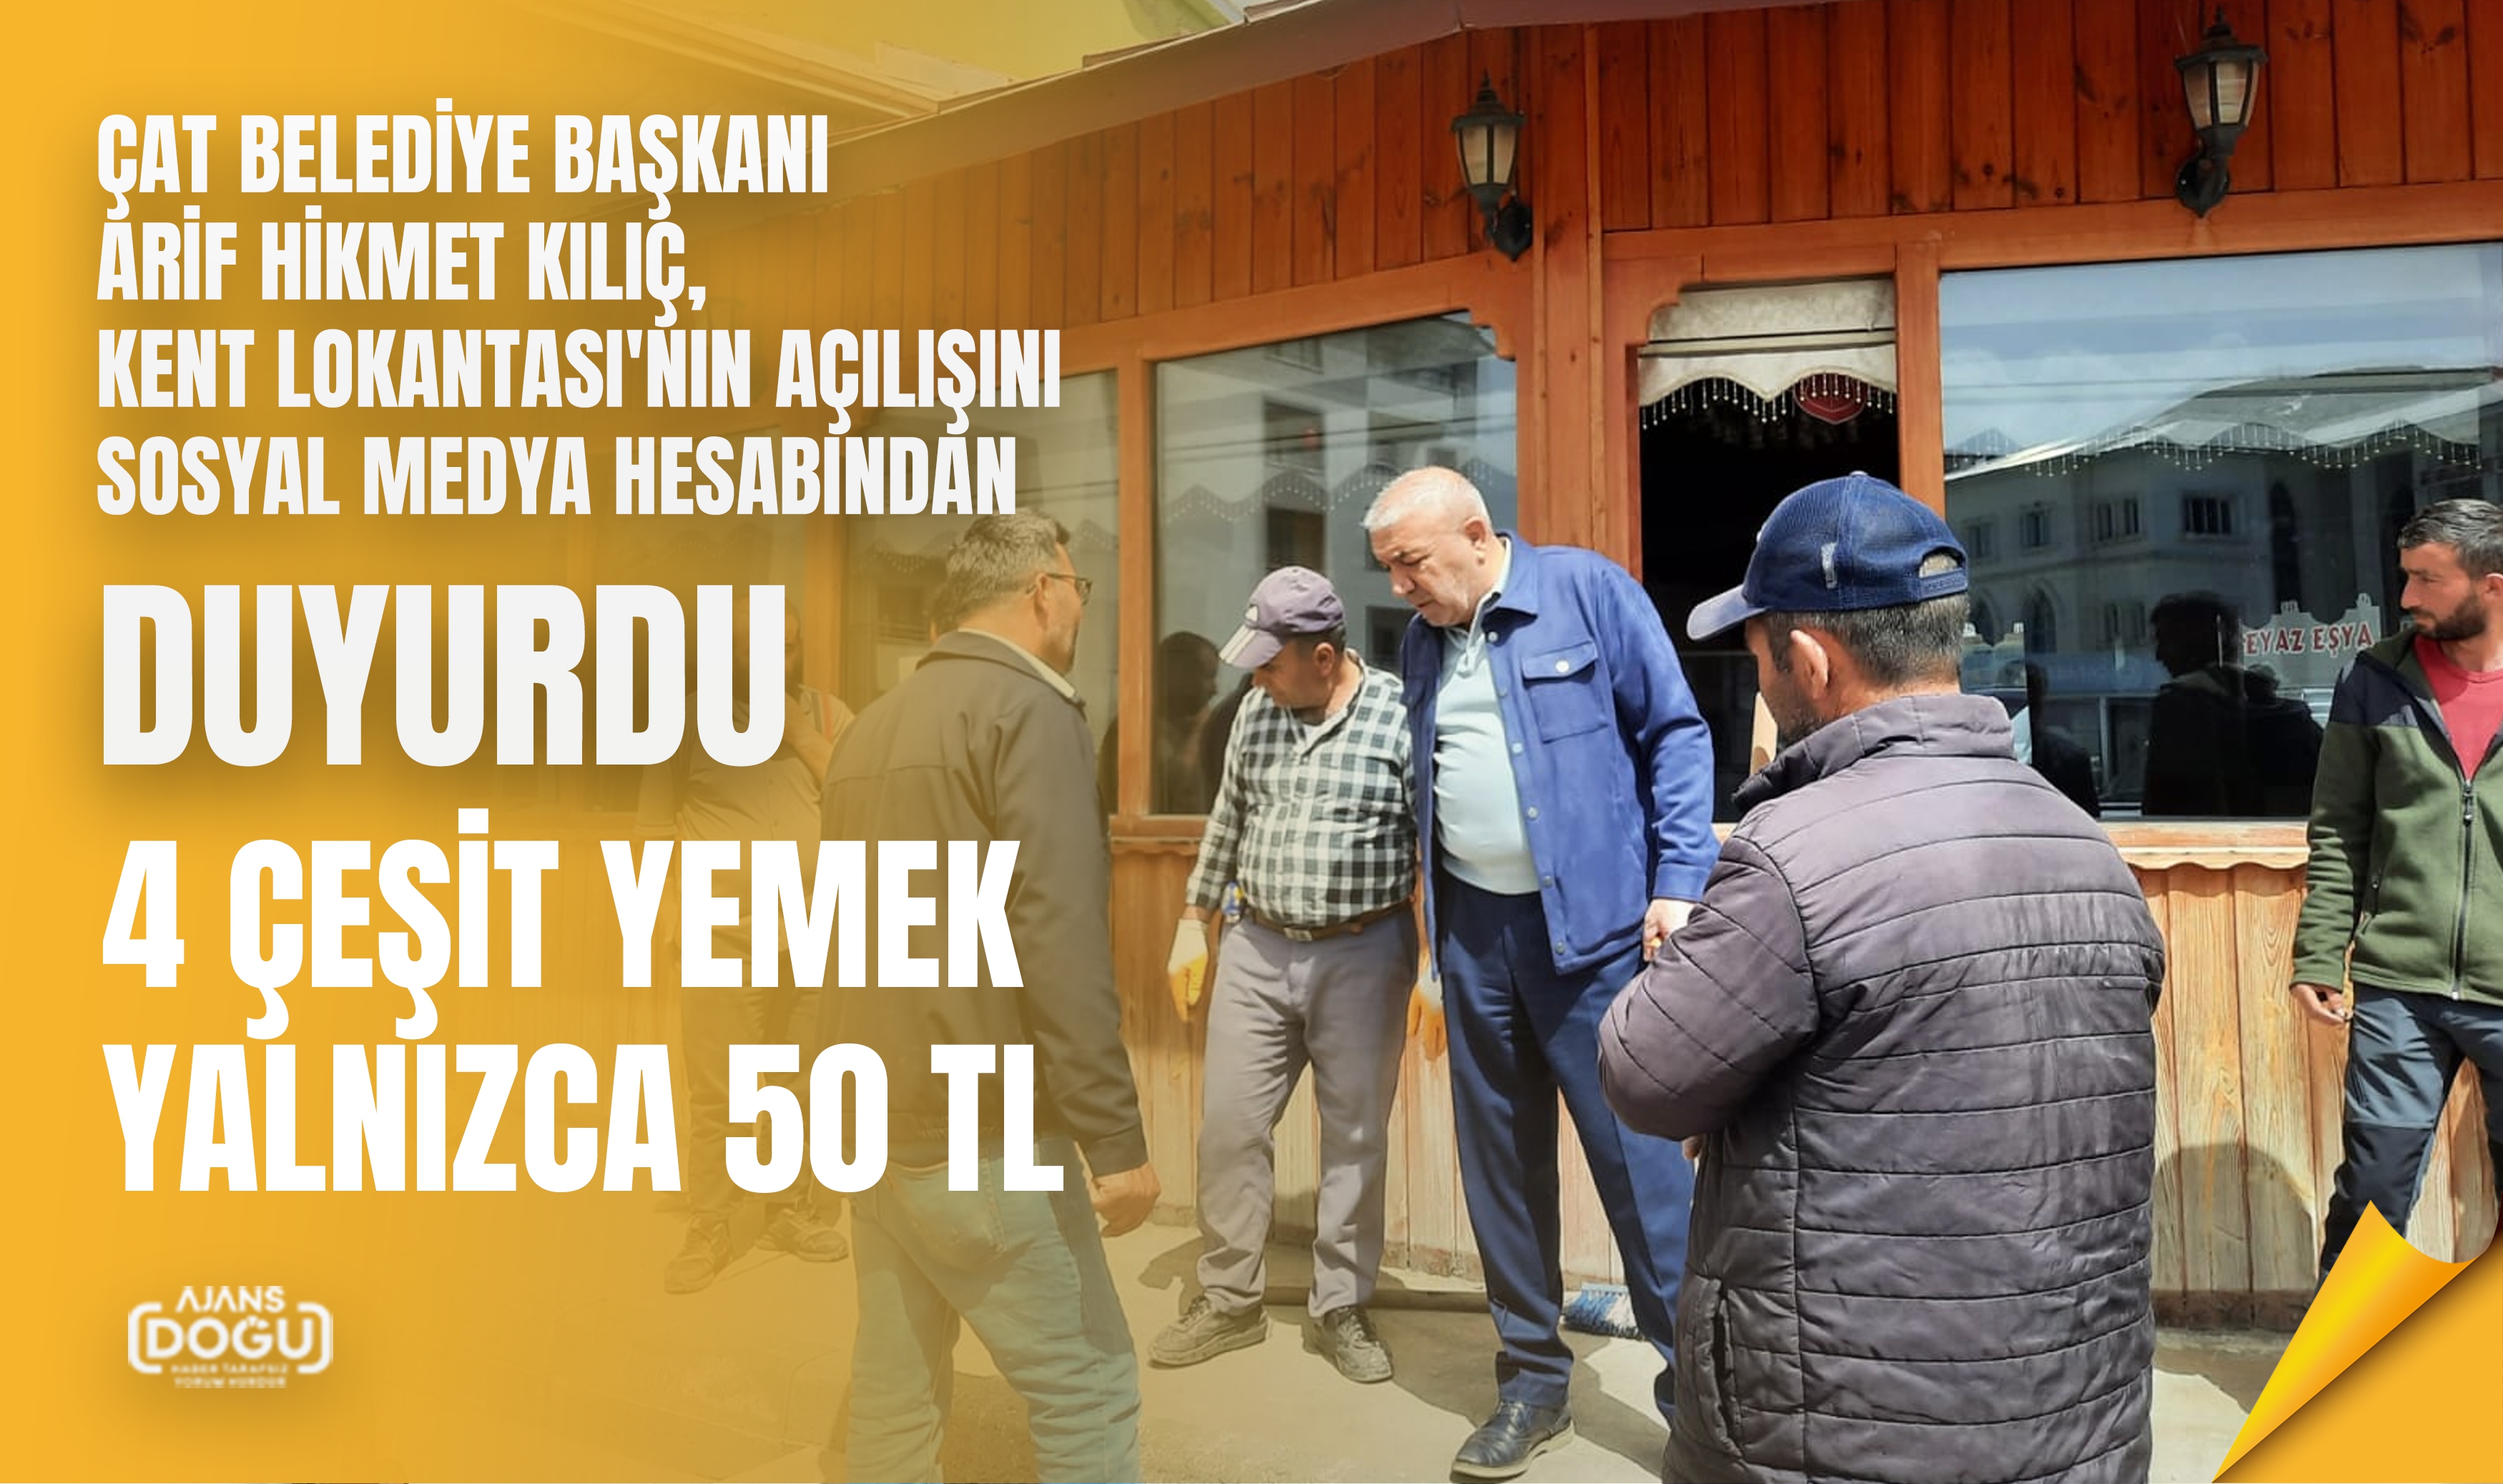 Çat Belediye Başkanı Arif Hikmet Kılıç, Kent Lokantası'nın Açılışını Sosyal Medya Hesabından Duyurdu